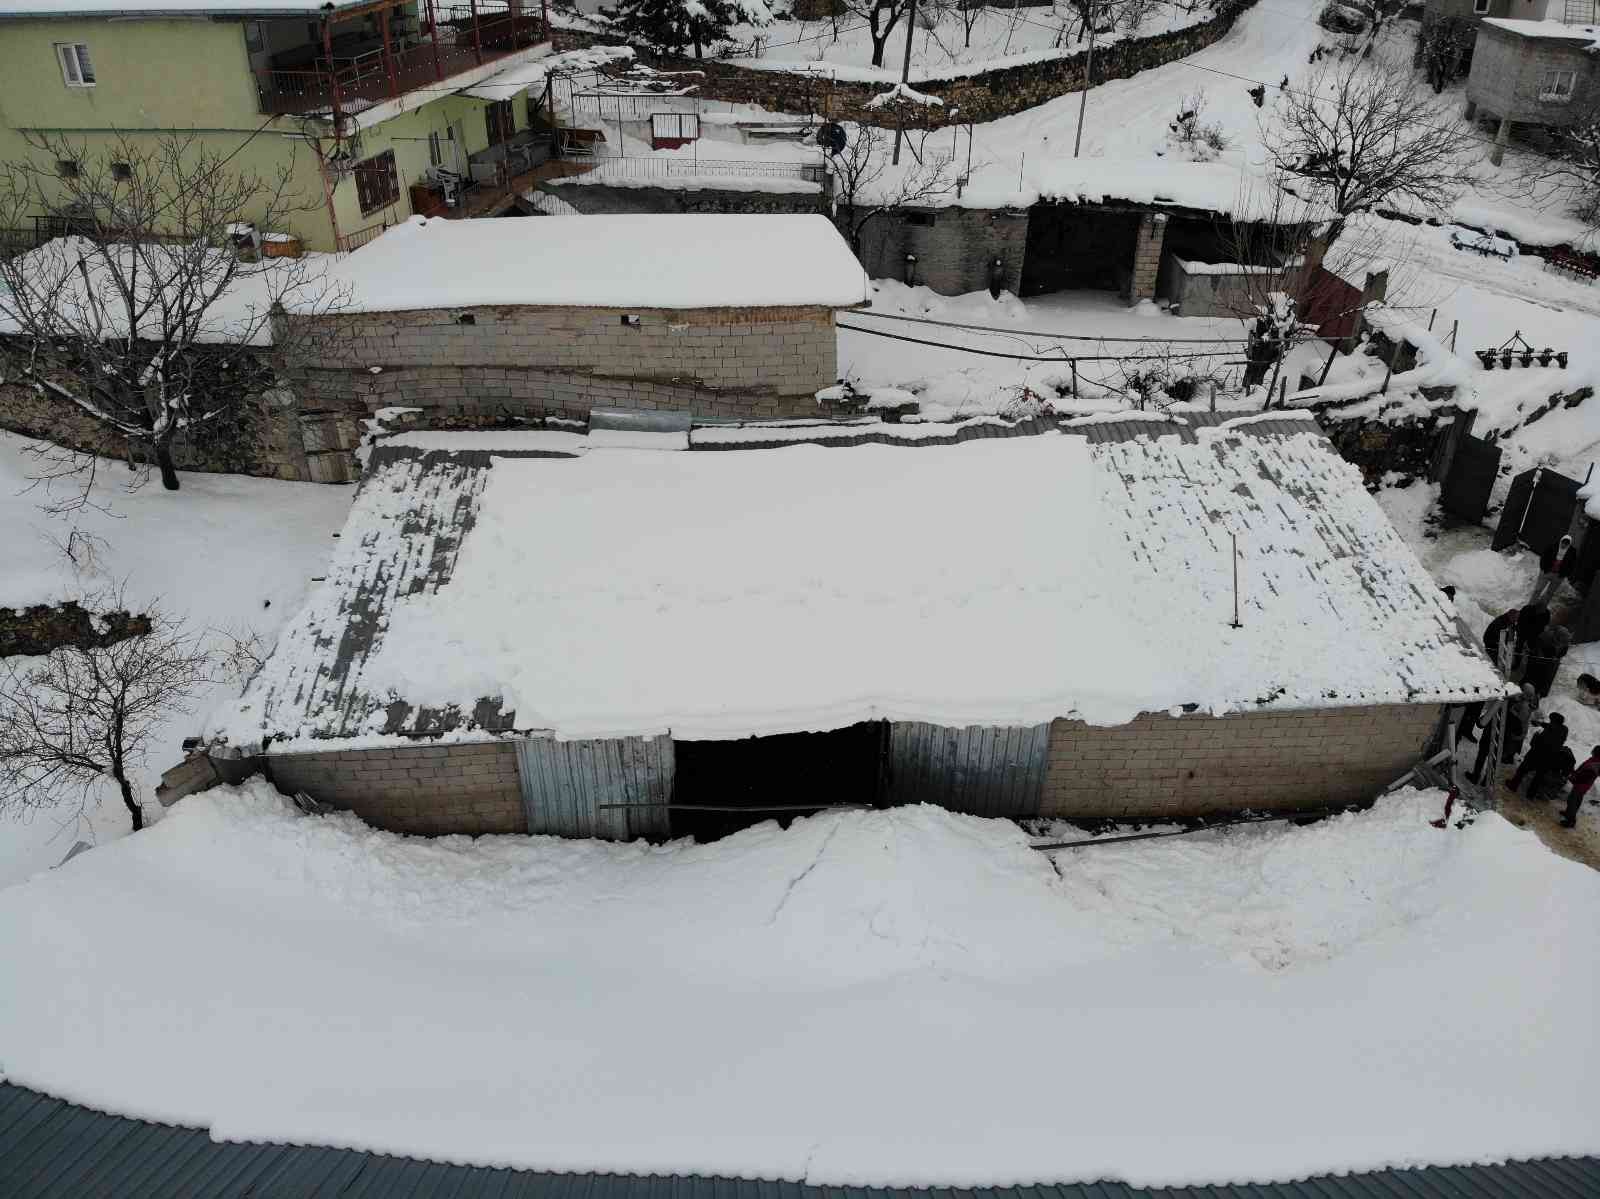 Yoğun kar yağışı nedeniyle otoparkın ve mandıranın çatısı çöktü